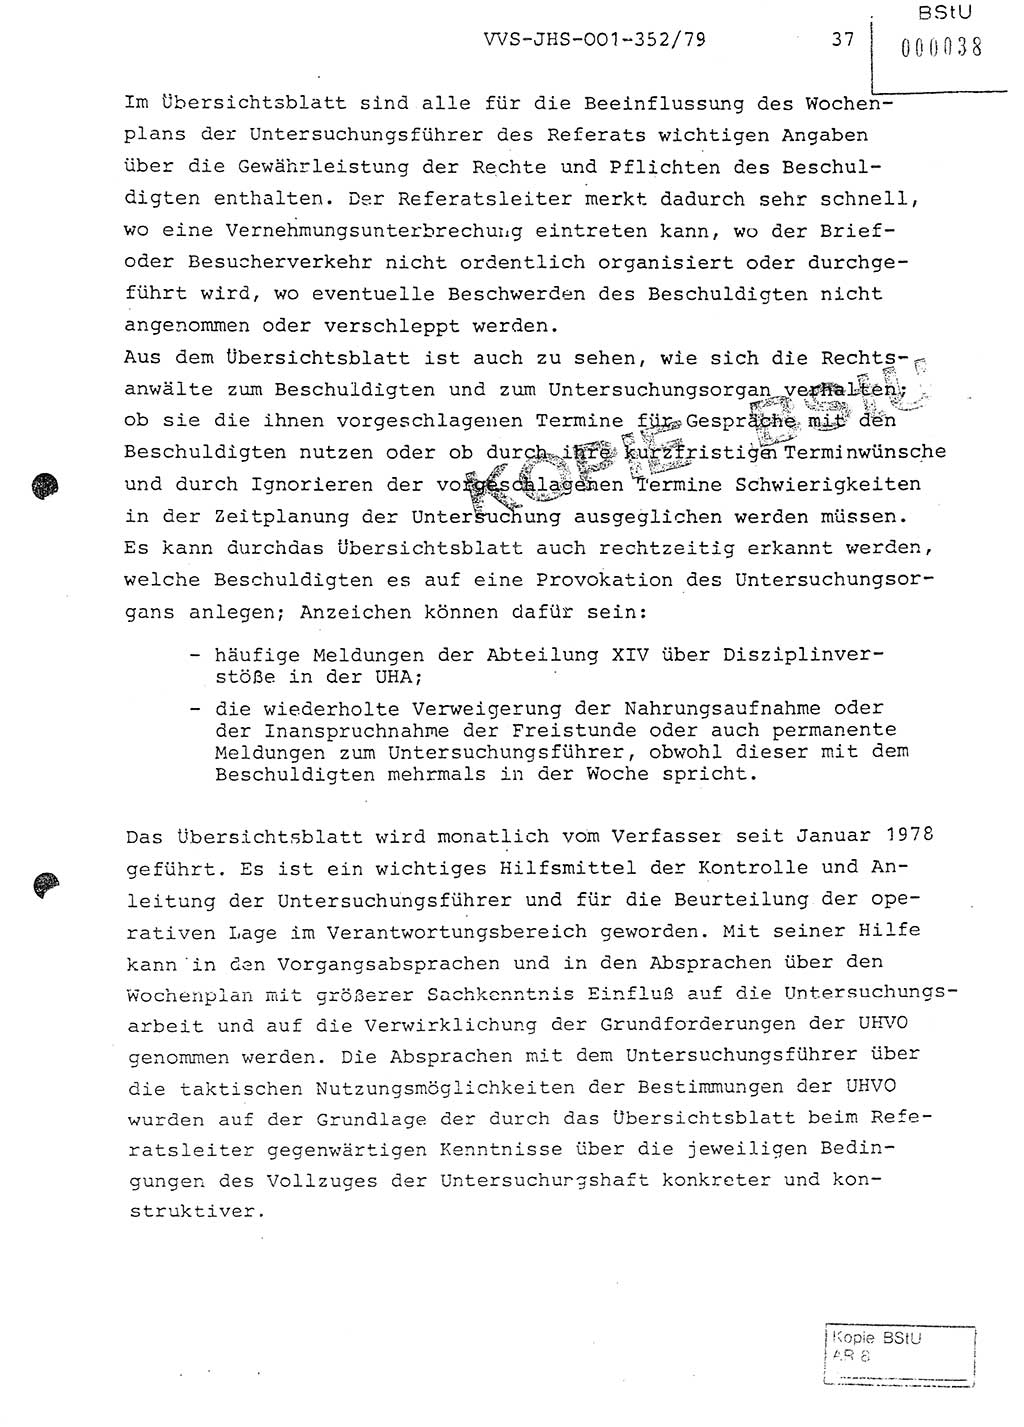 Diplomarbeit Hauptmann Peter Wittum (BV Bln. Abt. HA Ⅸ), Ministerium für Staatssicherheit (MfS) [Deutsche Demokratische Republik (DDR)], Juristische Hochschule (JHS), Vertrauliche Verschlußsache (VVS) o001-352/79, Potsdam 1979, Seite 37 (Dipl.-Arb. MfS DDR JHS VVS o001-352/79 1979, S. 37)